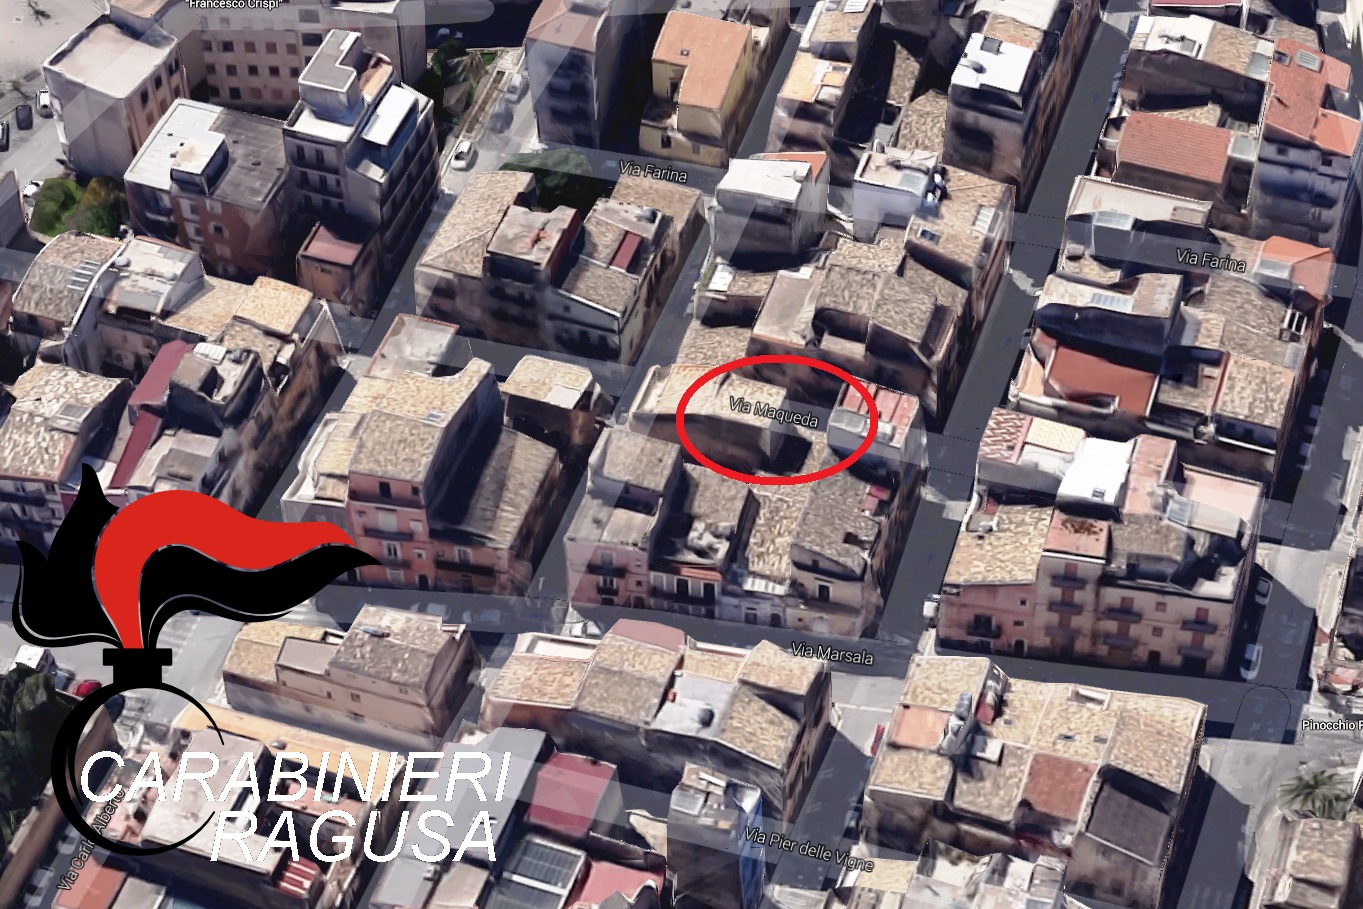  Ragusa – Tenta il suicidio dal secondo piano, bloccato in extremis dal comandante dei carabinieri